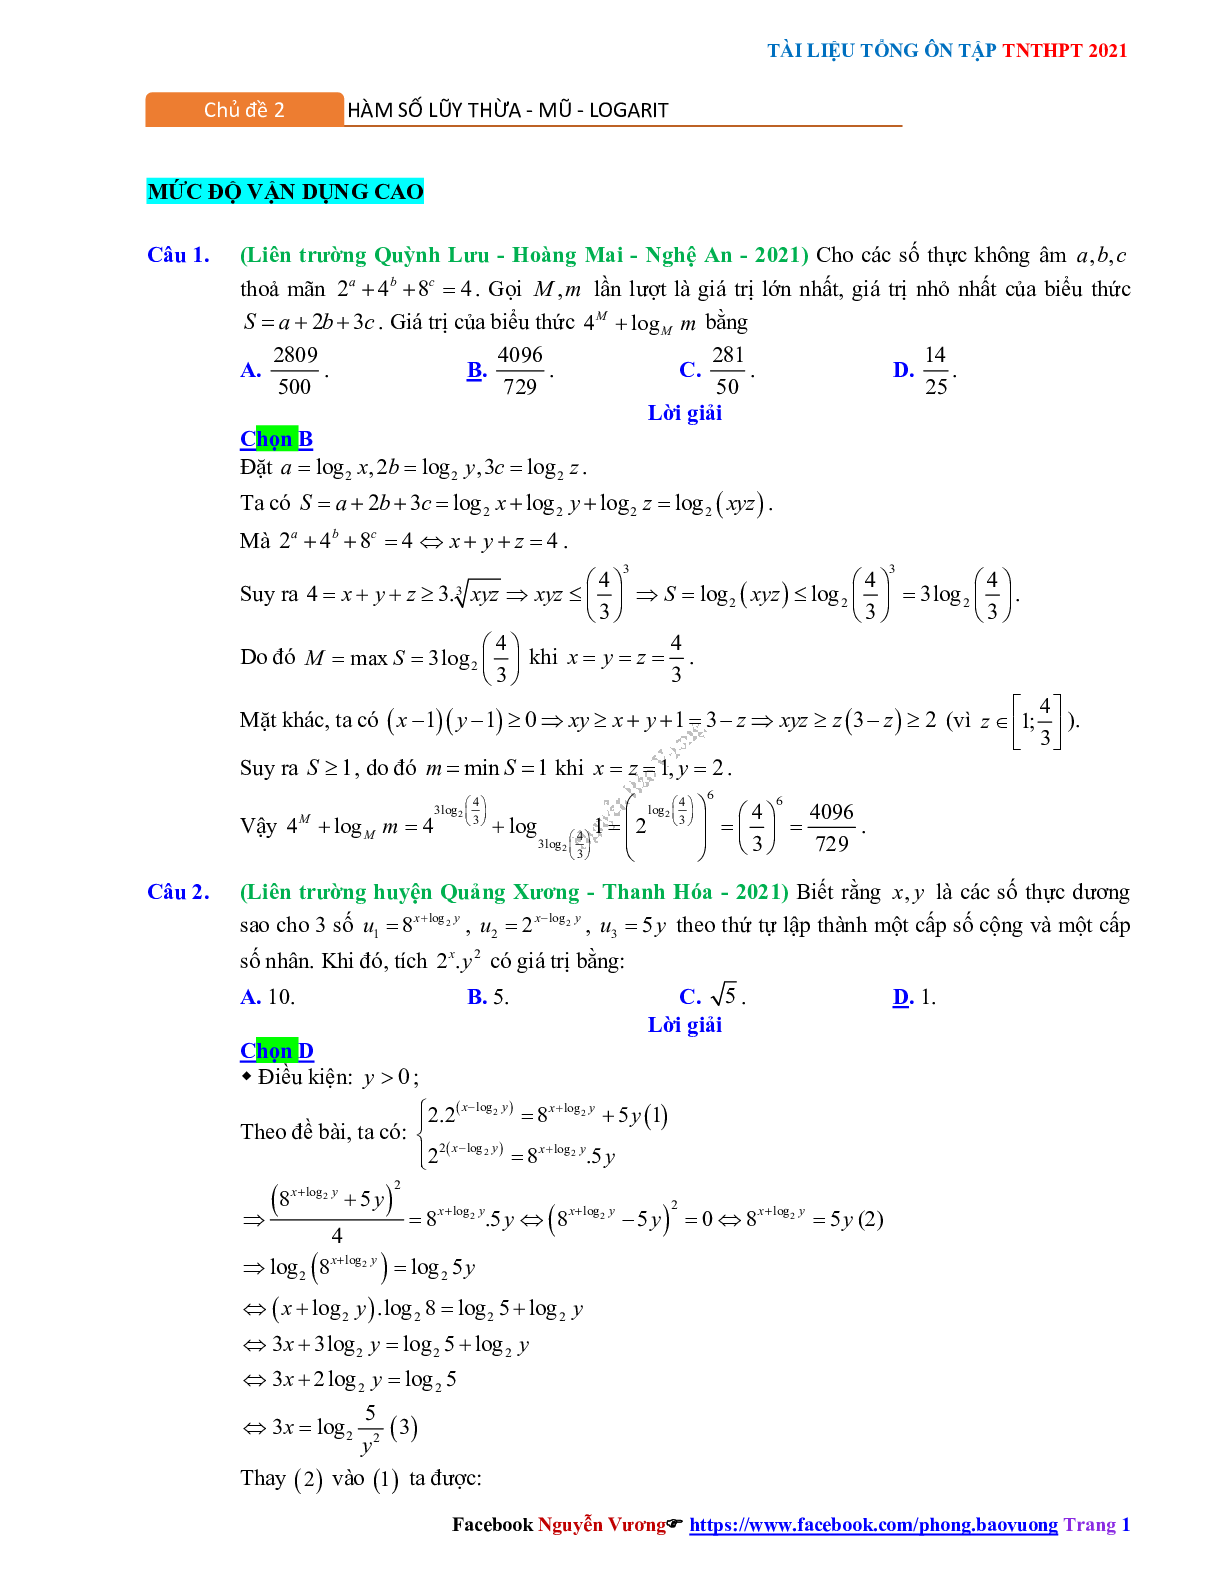 Trắc nghiệm Ôn thi THPT QG Toán 12: Đáp án mũ - lũy thừa - logarit mức độ vận dụng cao (trang 1)